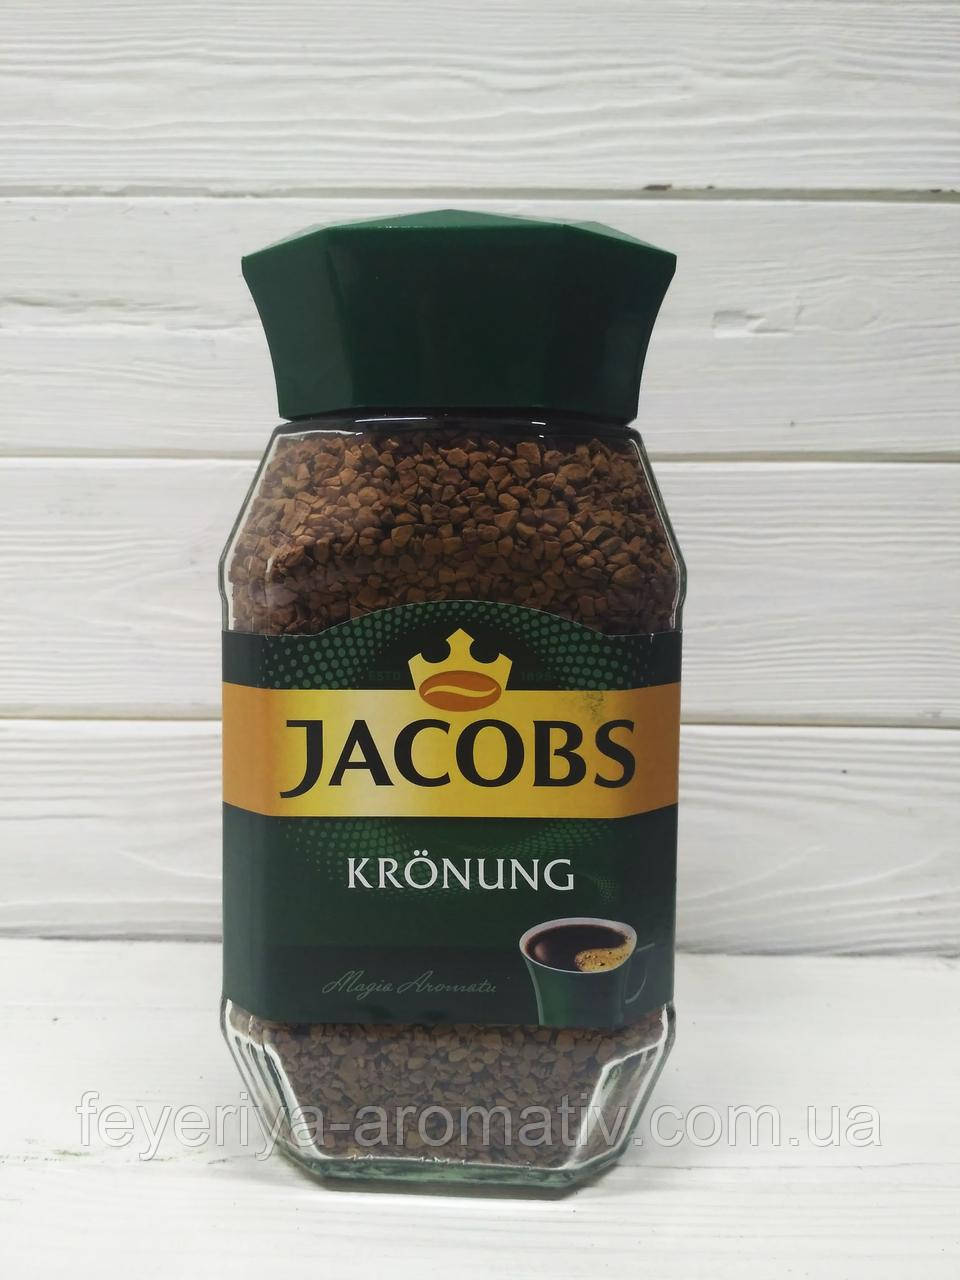 Кофе растворимый Jacobs Kronung 200гр. (Нидерланды)